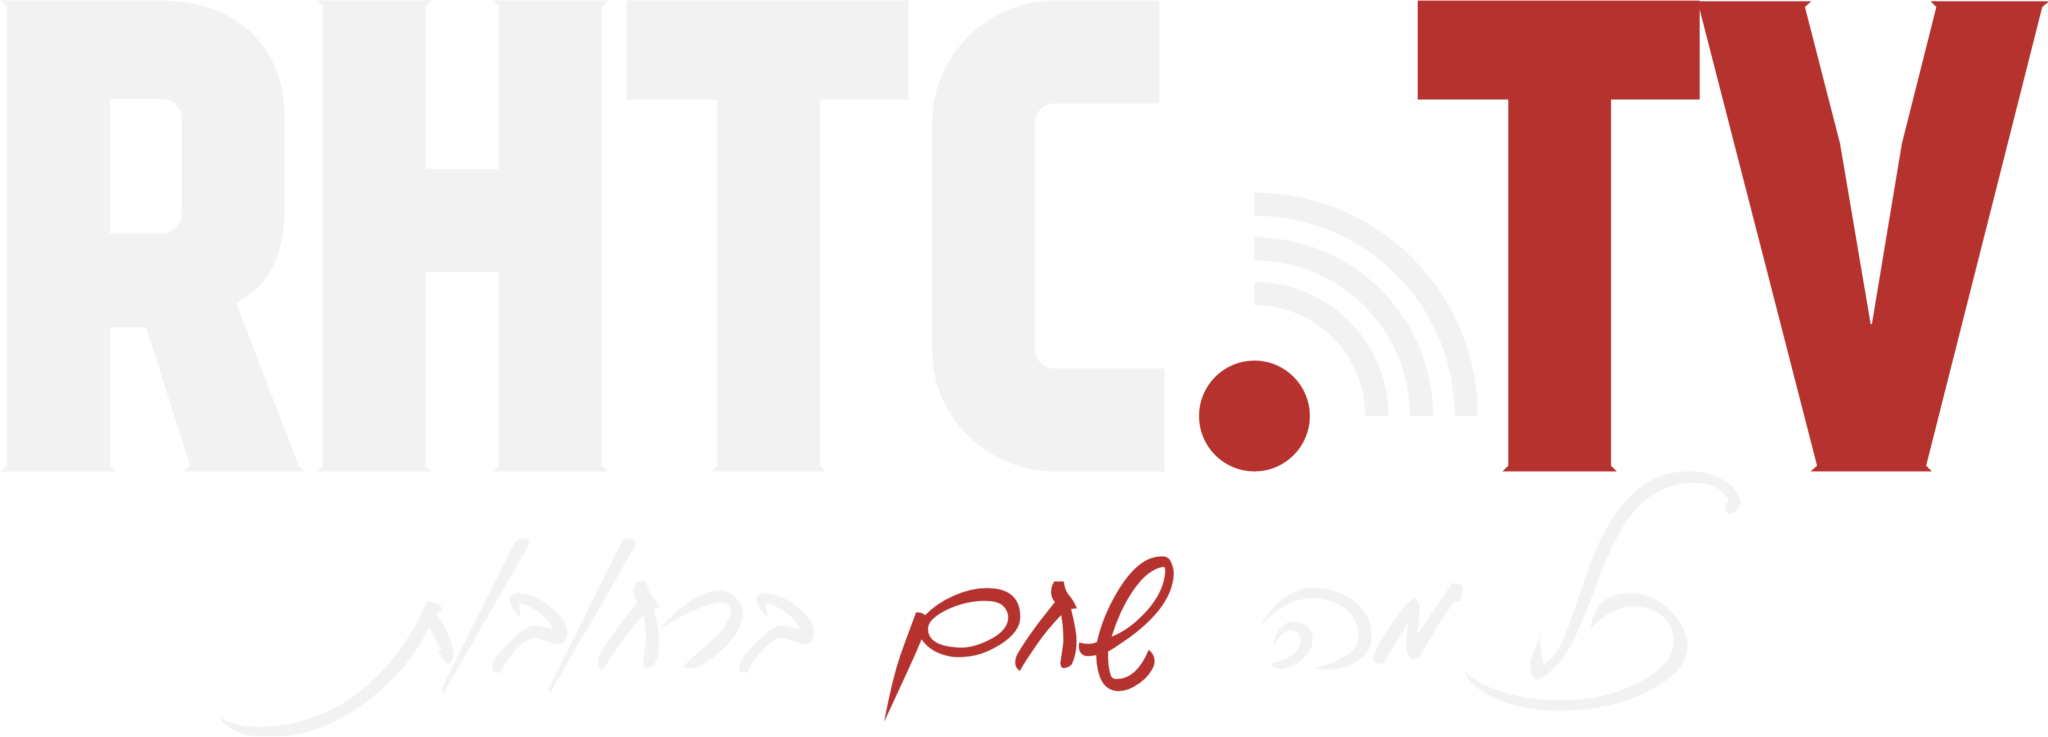 לוגו RHTC - ערוץ רחובותי מקומי